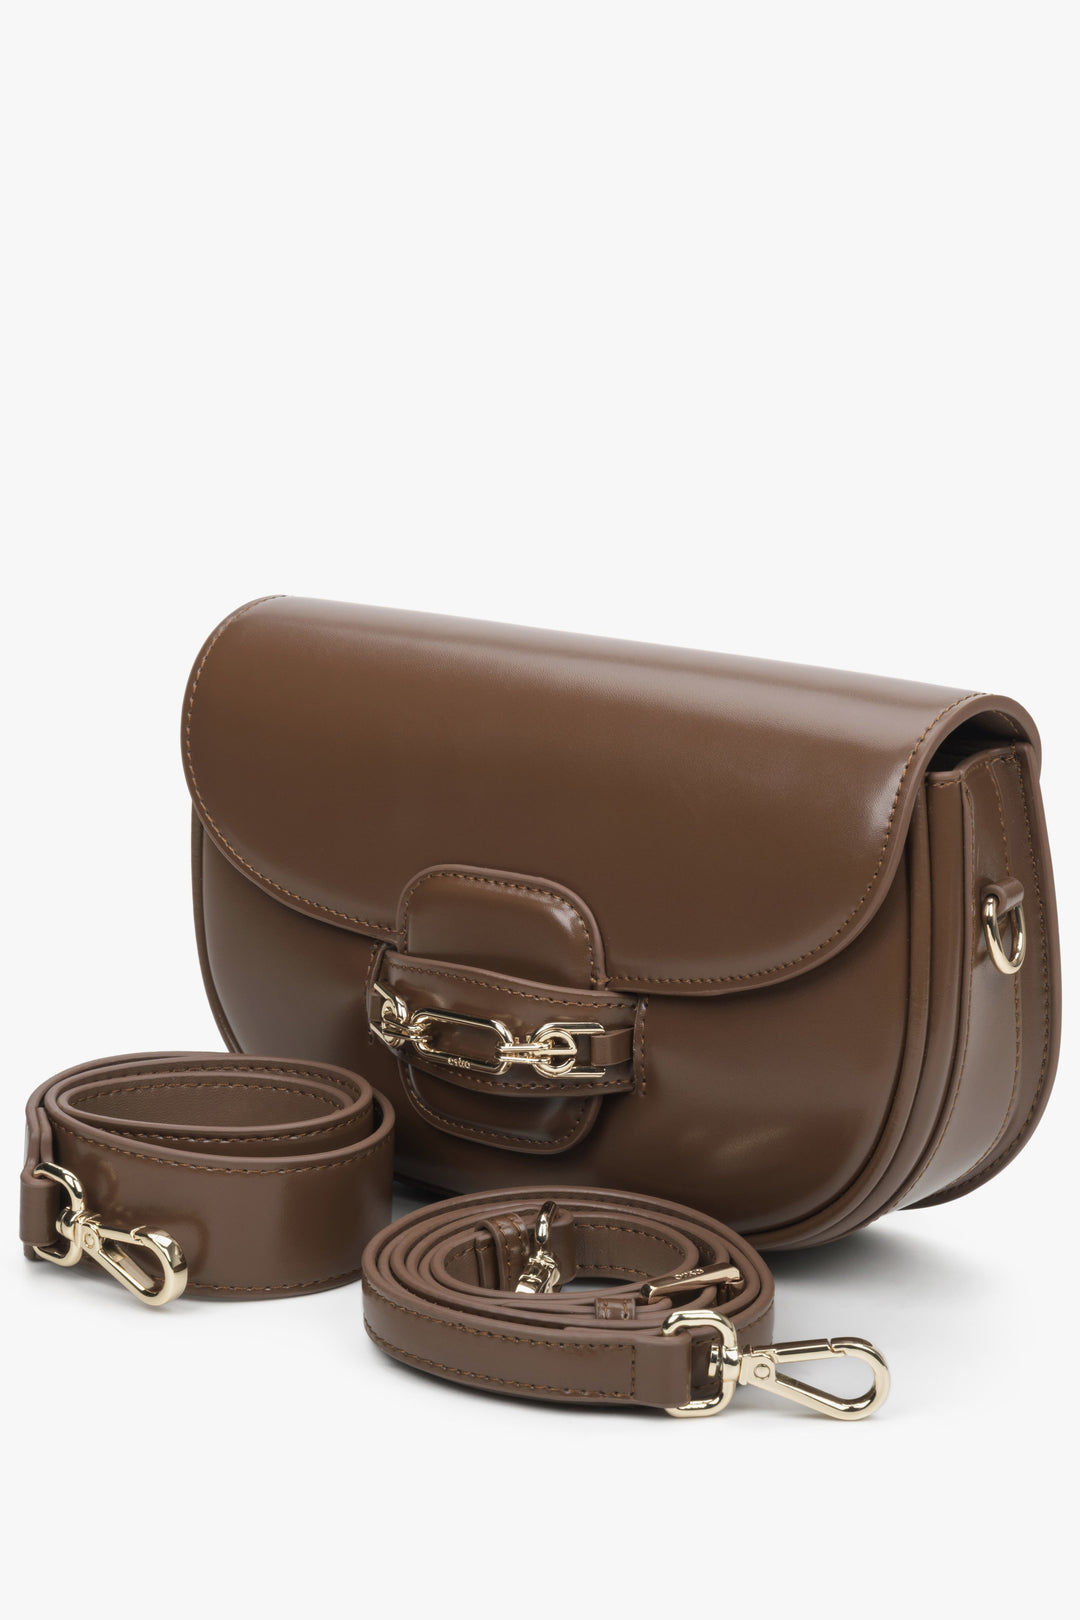 Estro women's brown bag with adjustable strap.